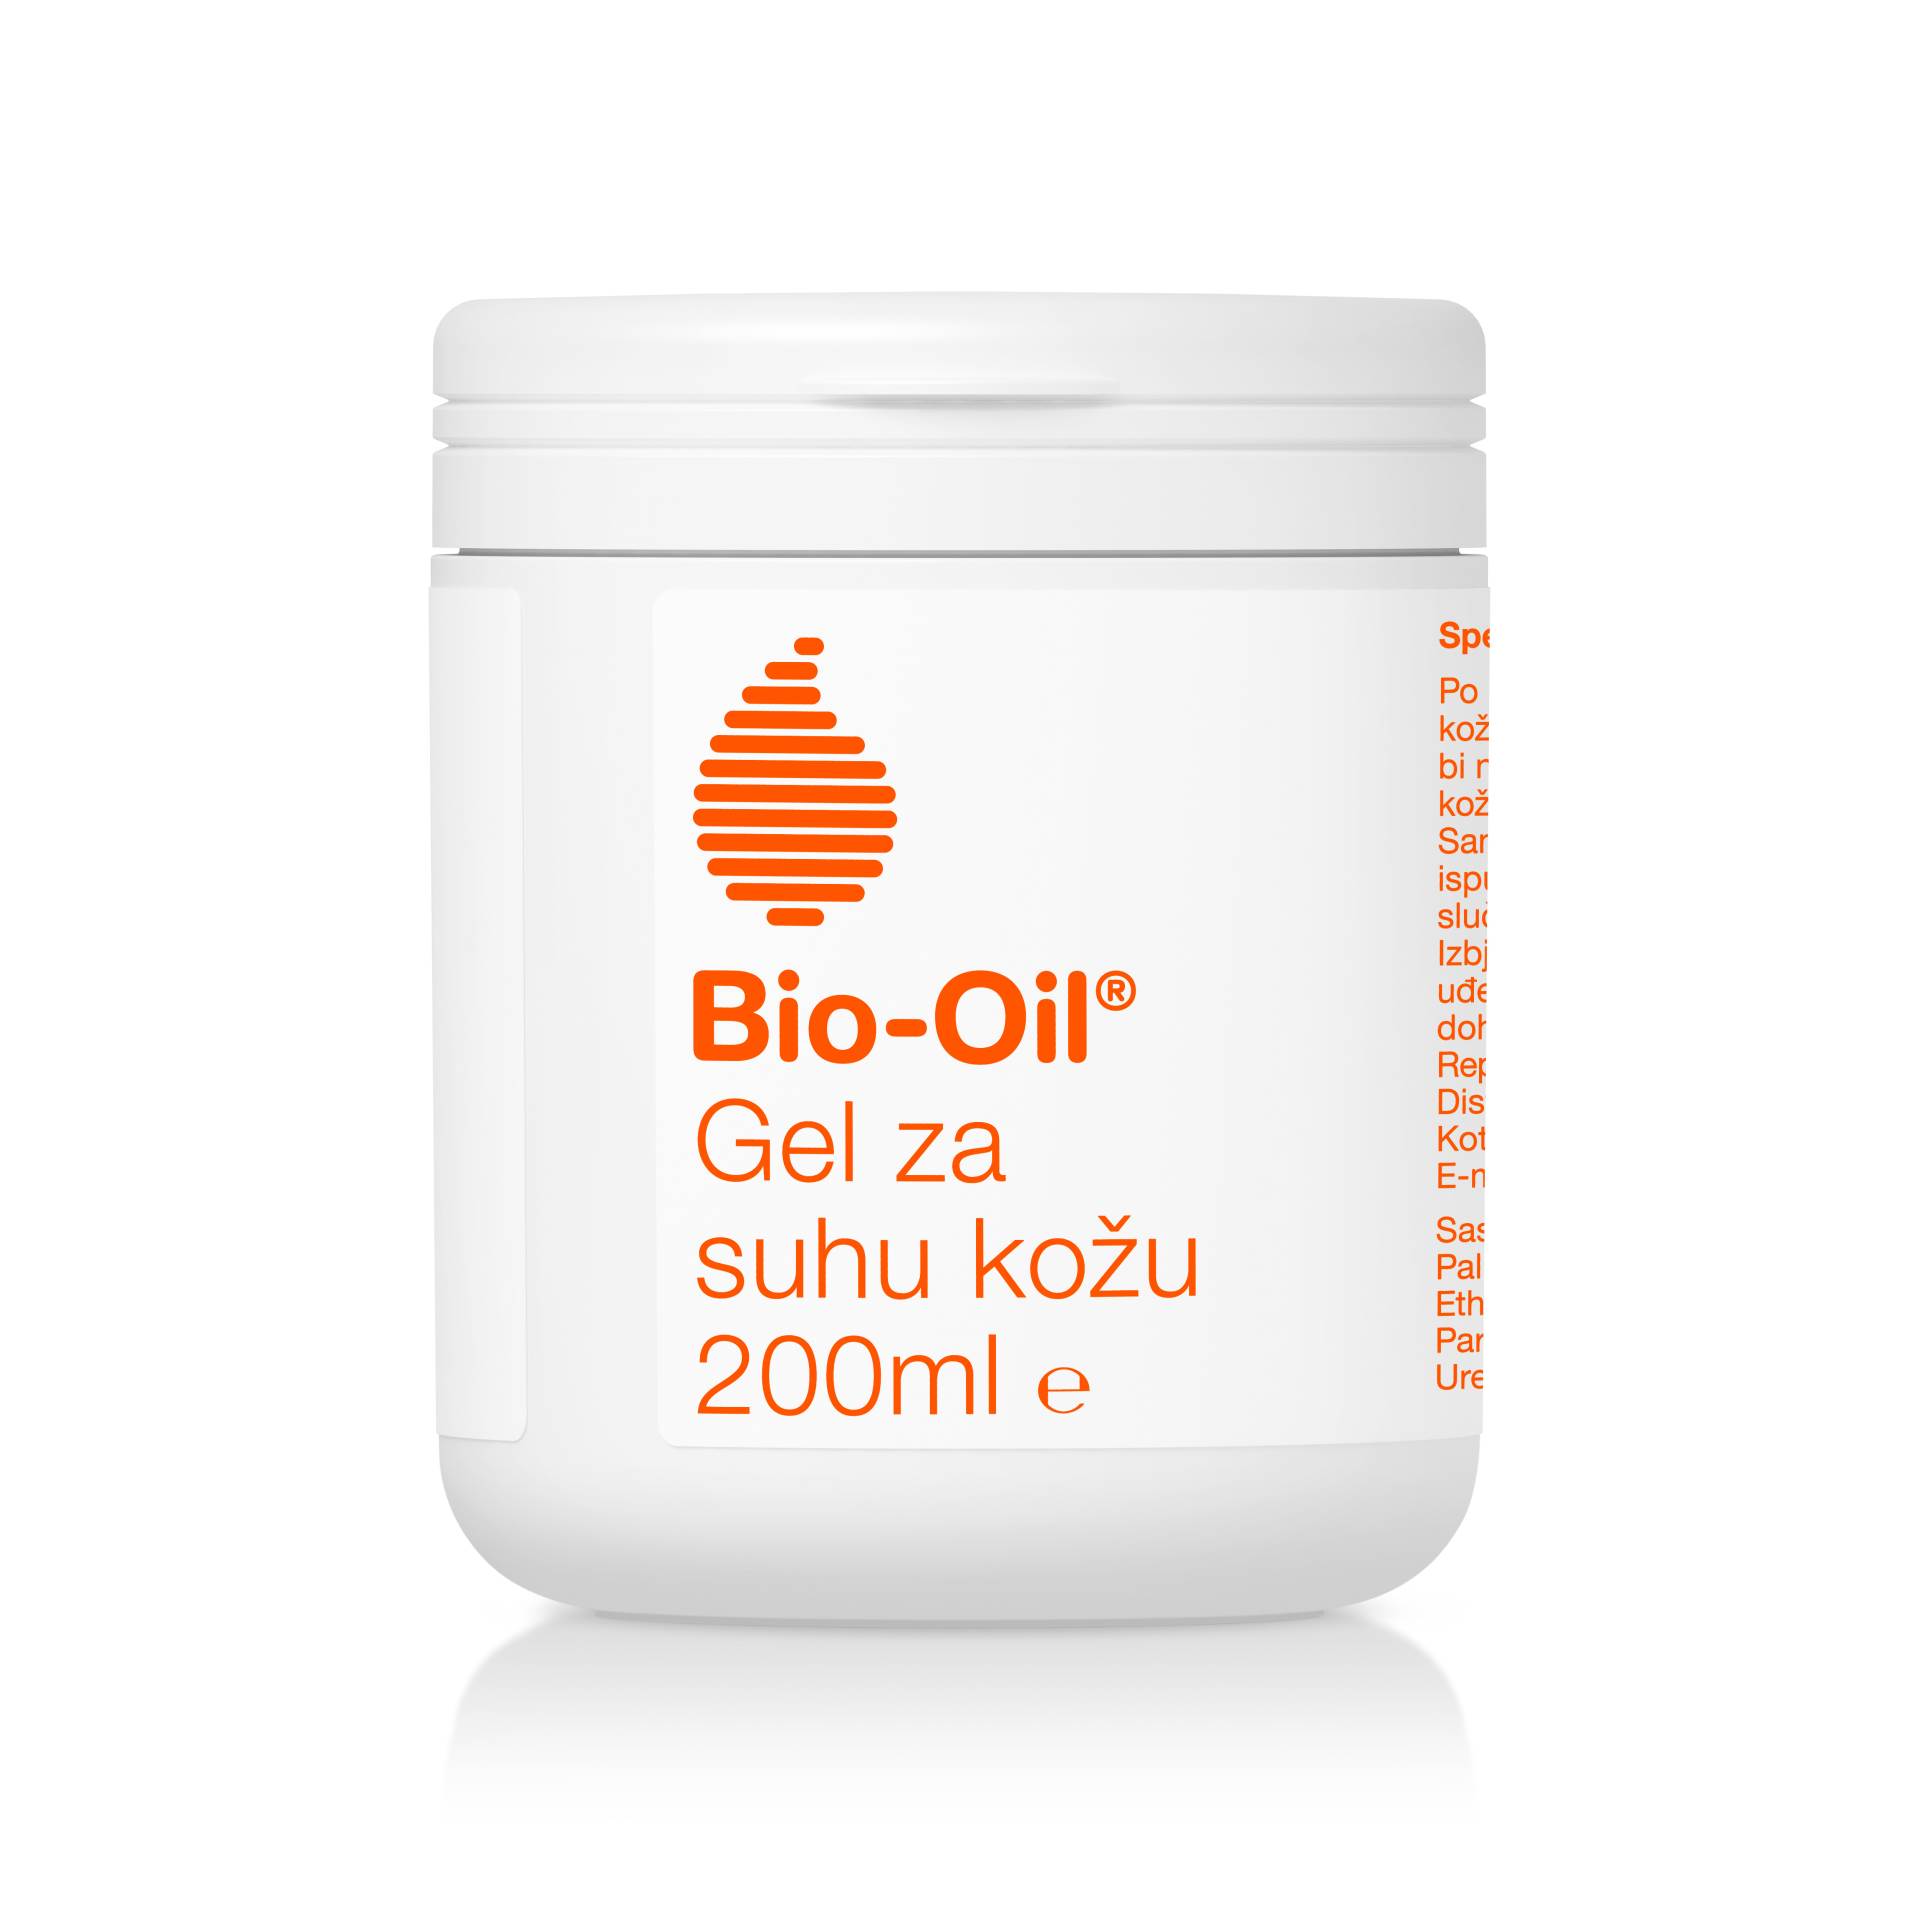 Bio-Oil® s ponosom predstavlja novu generaciju tretmana za suhu kožu